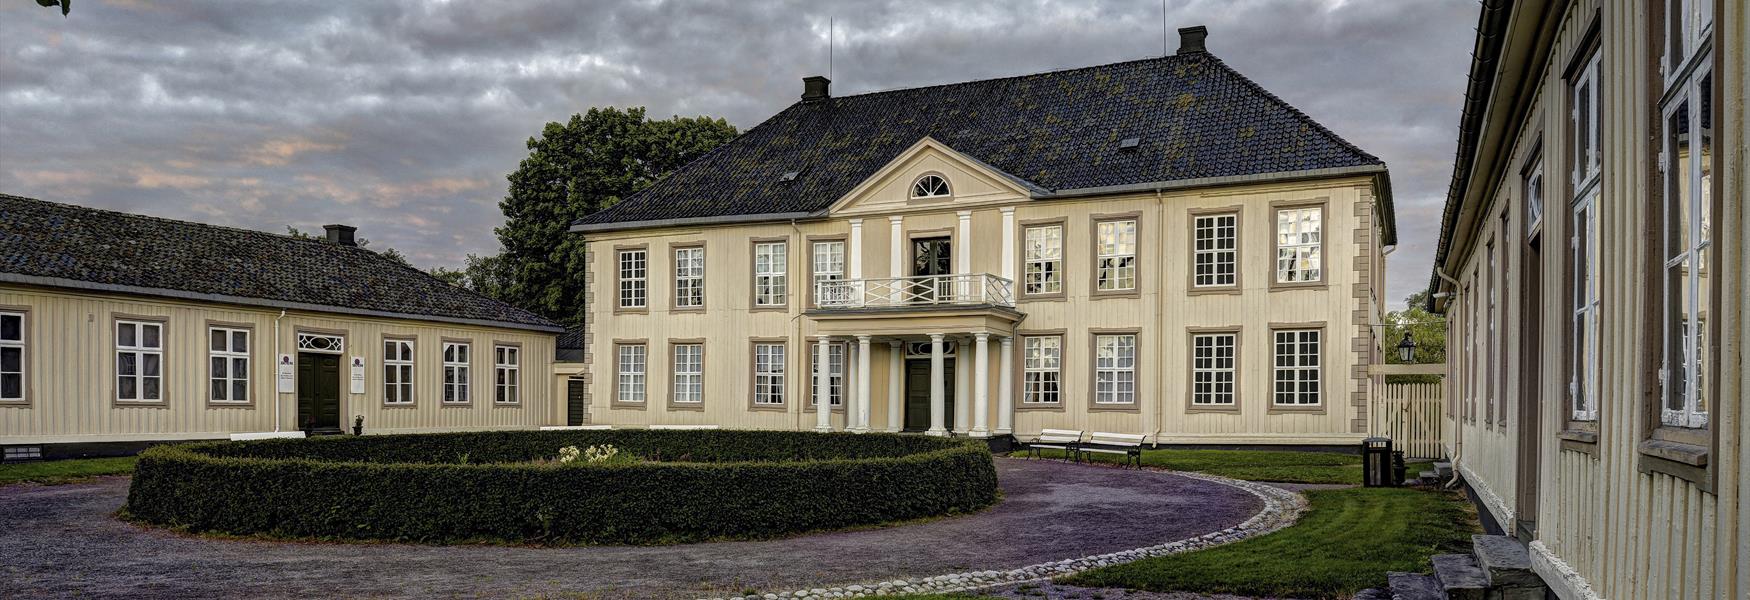 Søndre Brekke estate